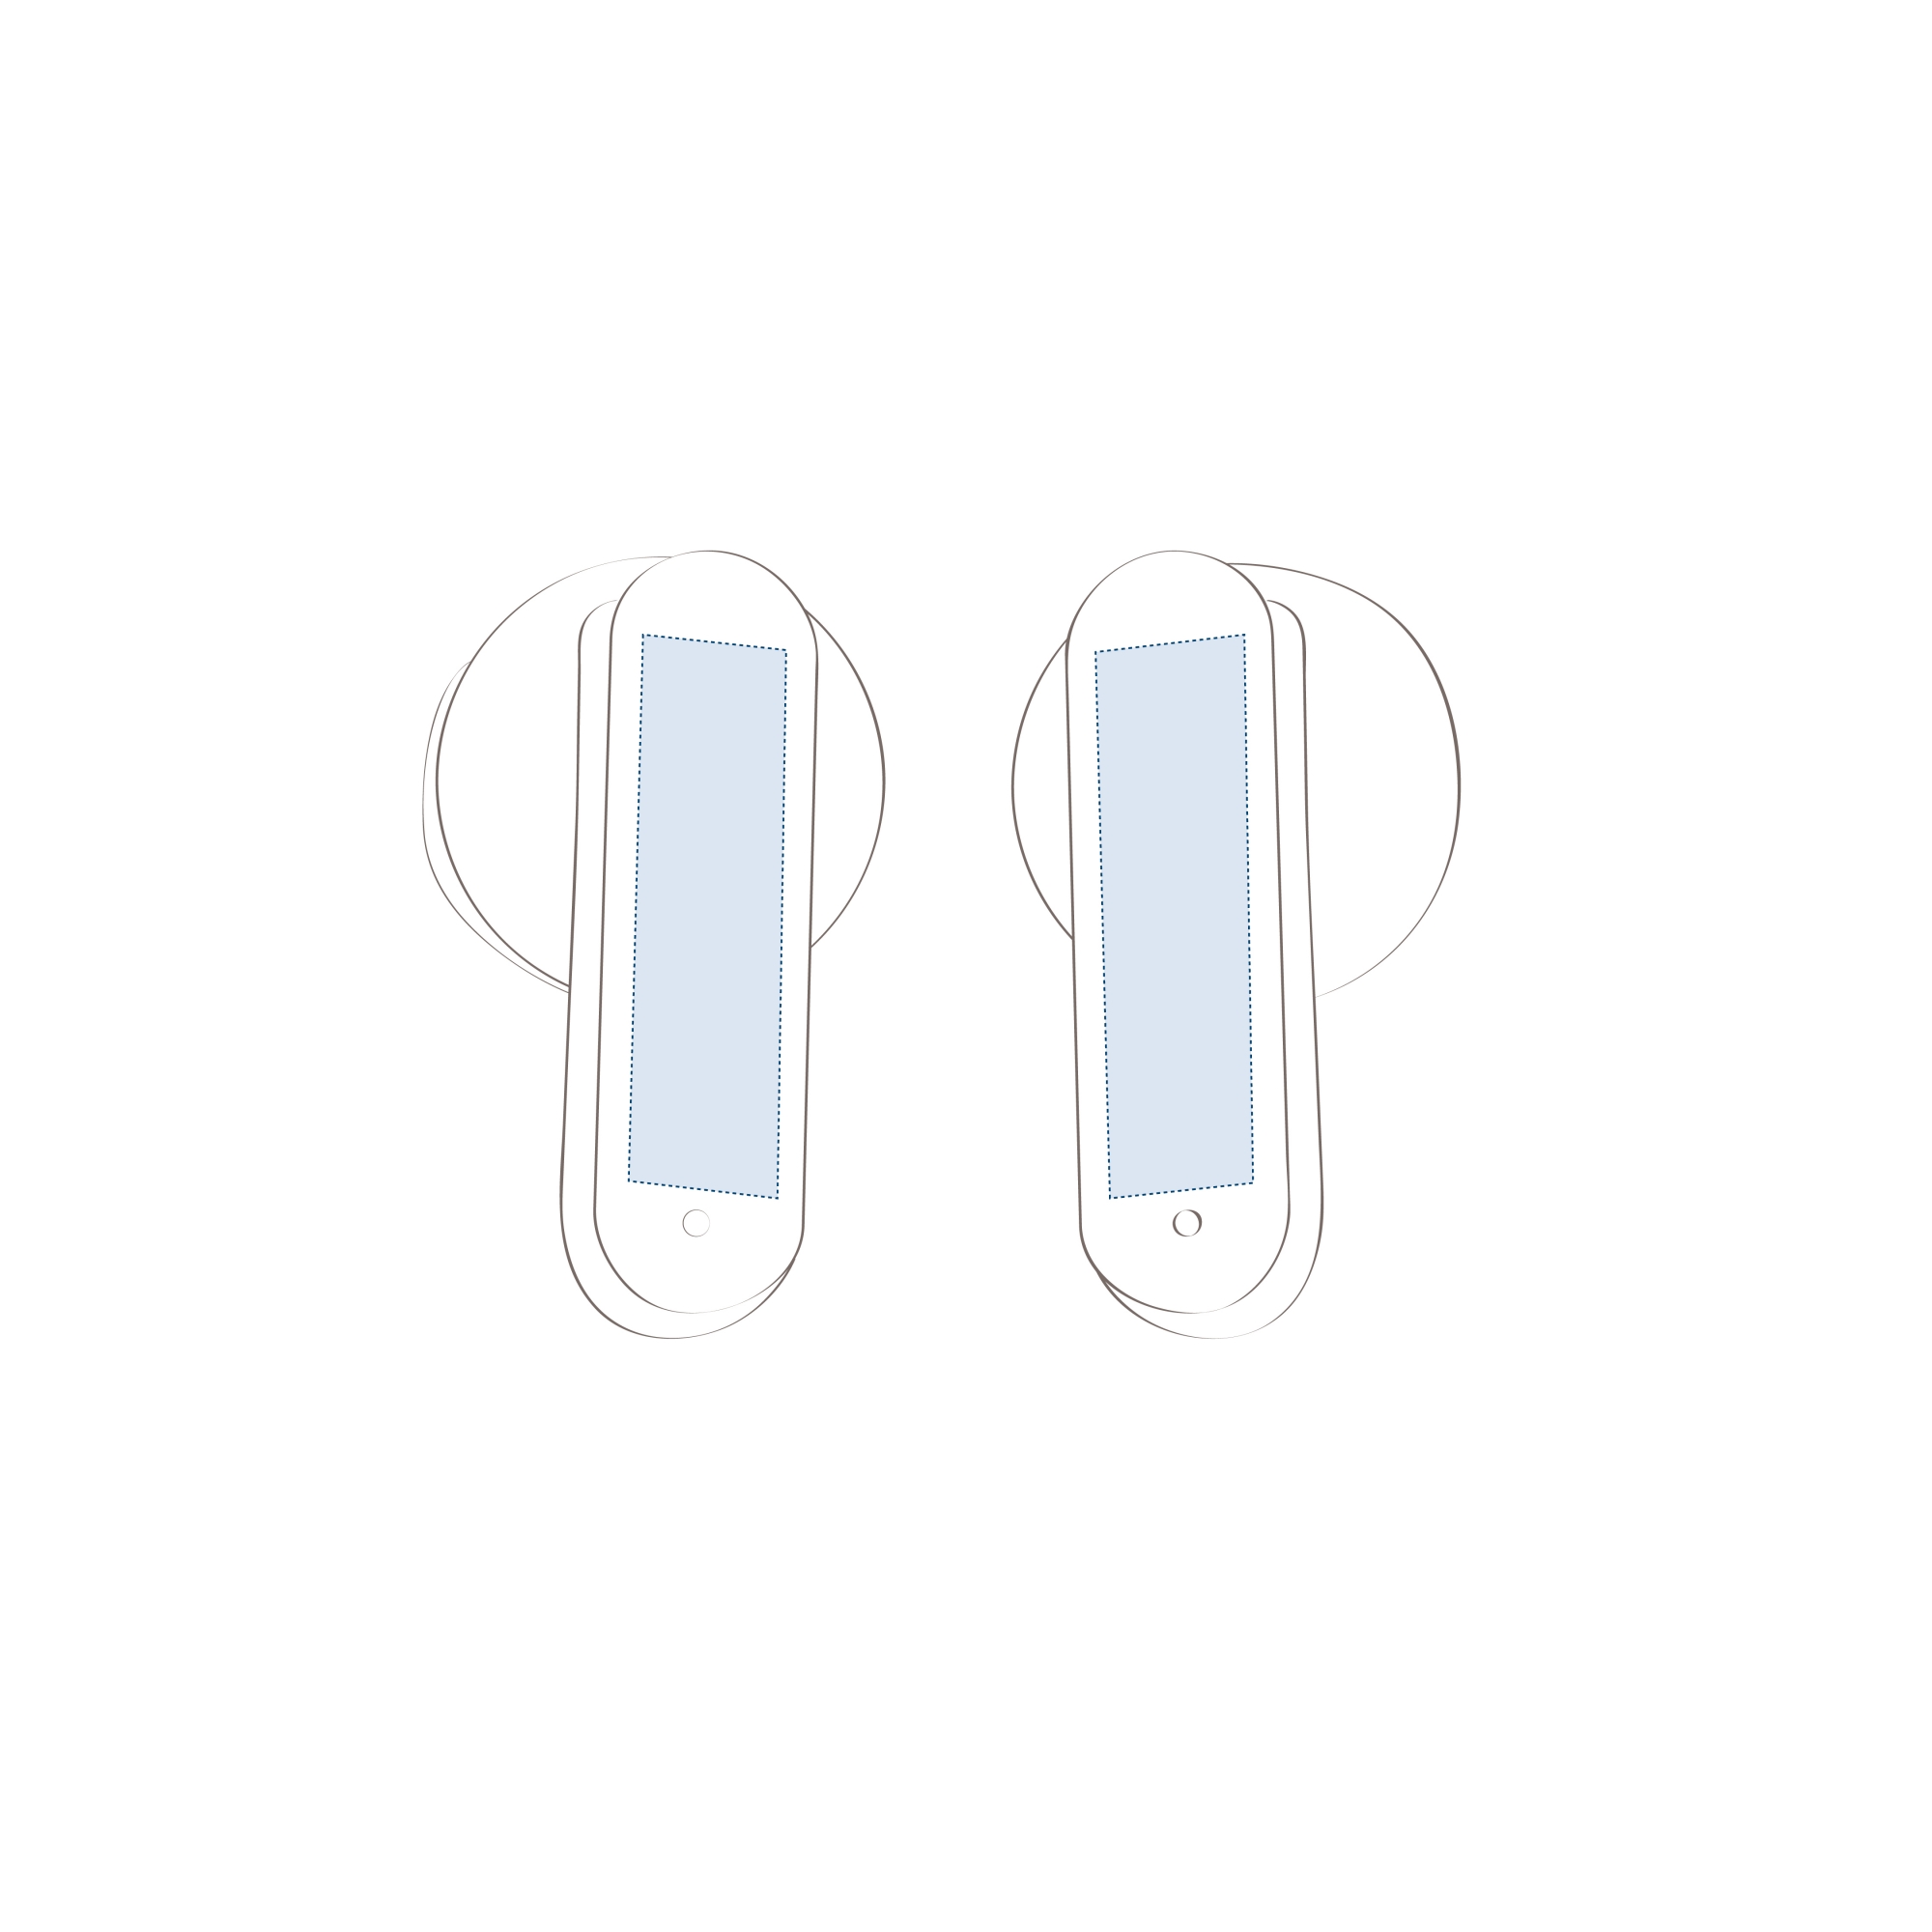 Tampografía en el lateral de ambos auriculares (20 x 5 mm)